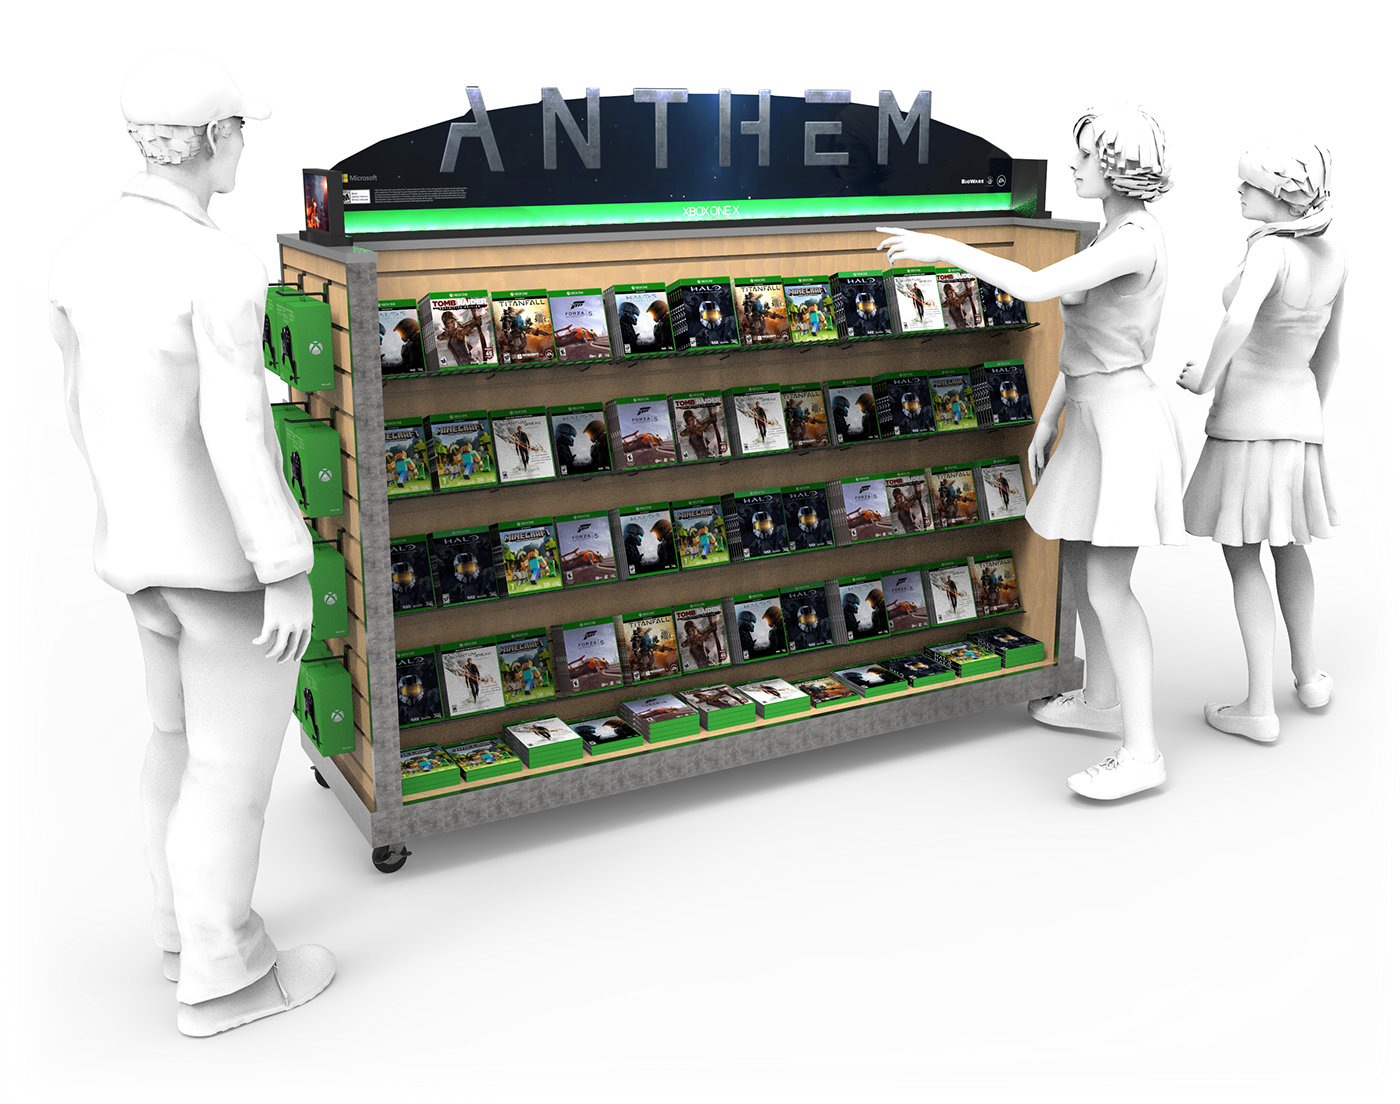 xbox anthem shelf display retail display Gaming Display Games Gaming demo LED Touchscreen Signage